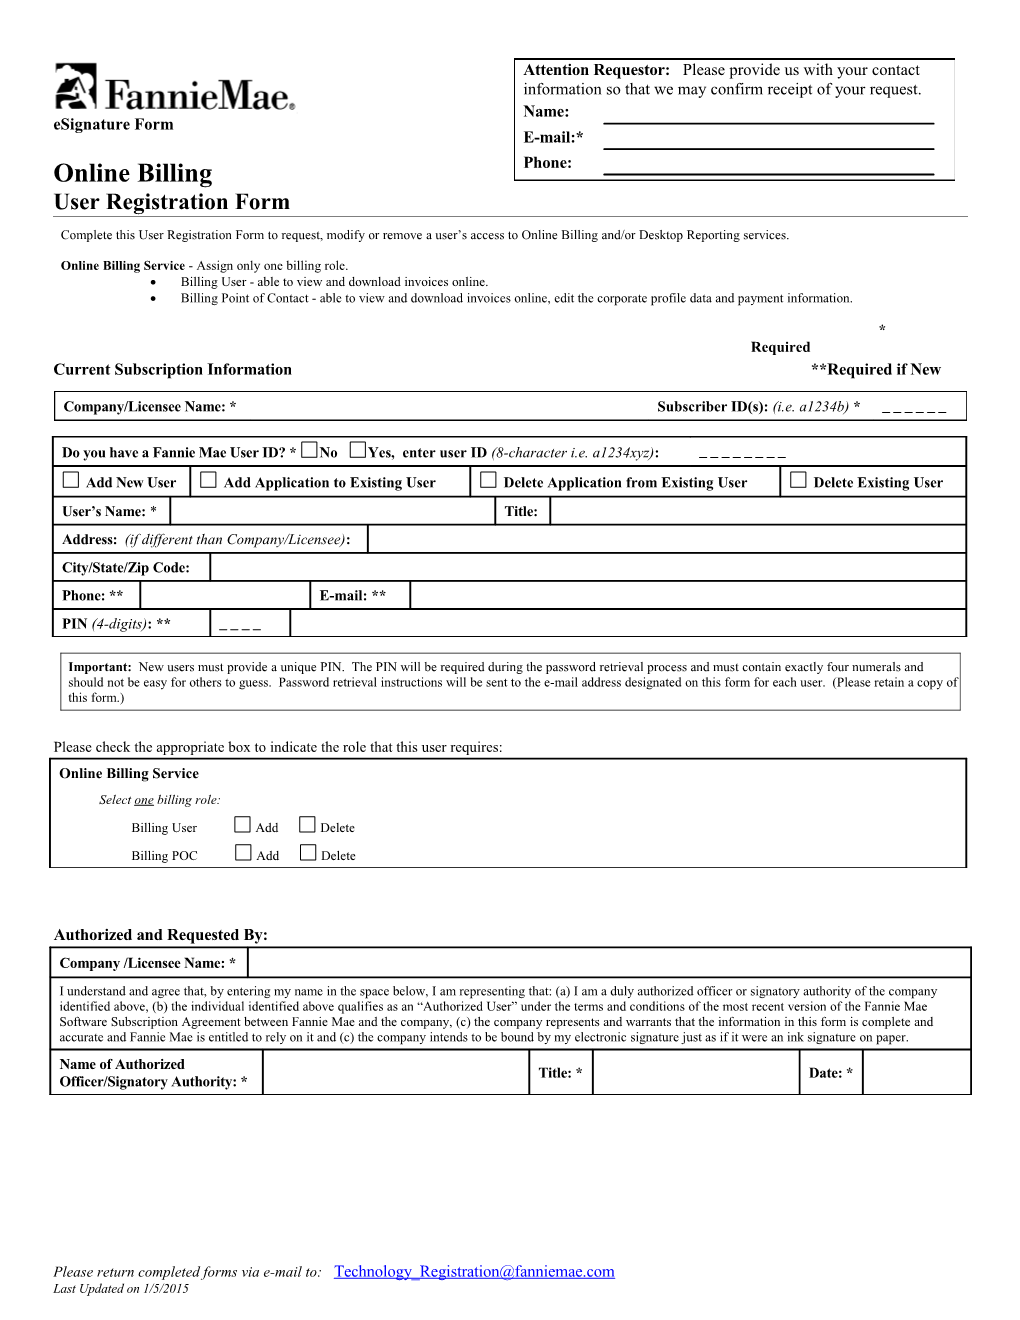 Online Billing User Registration Form